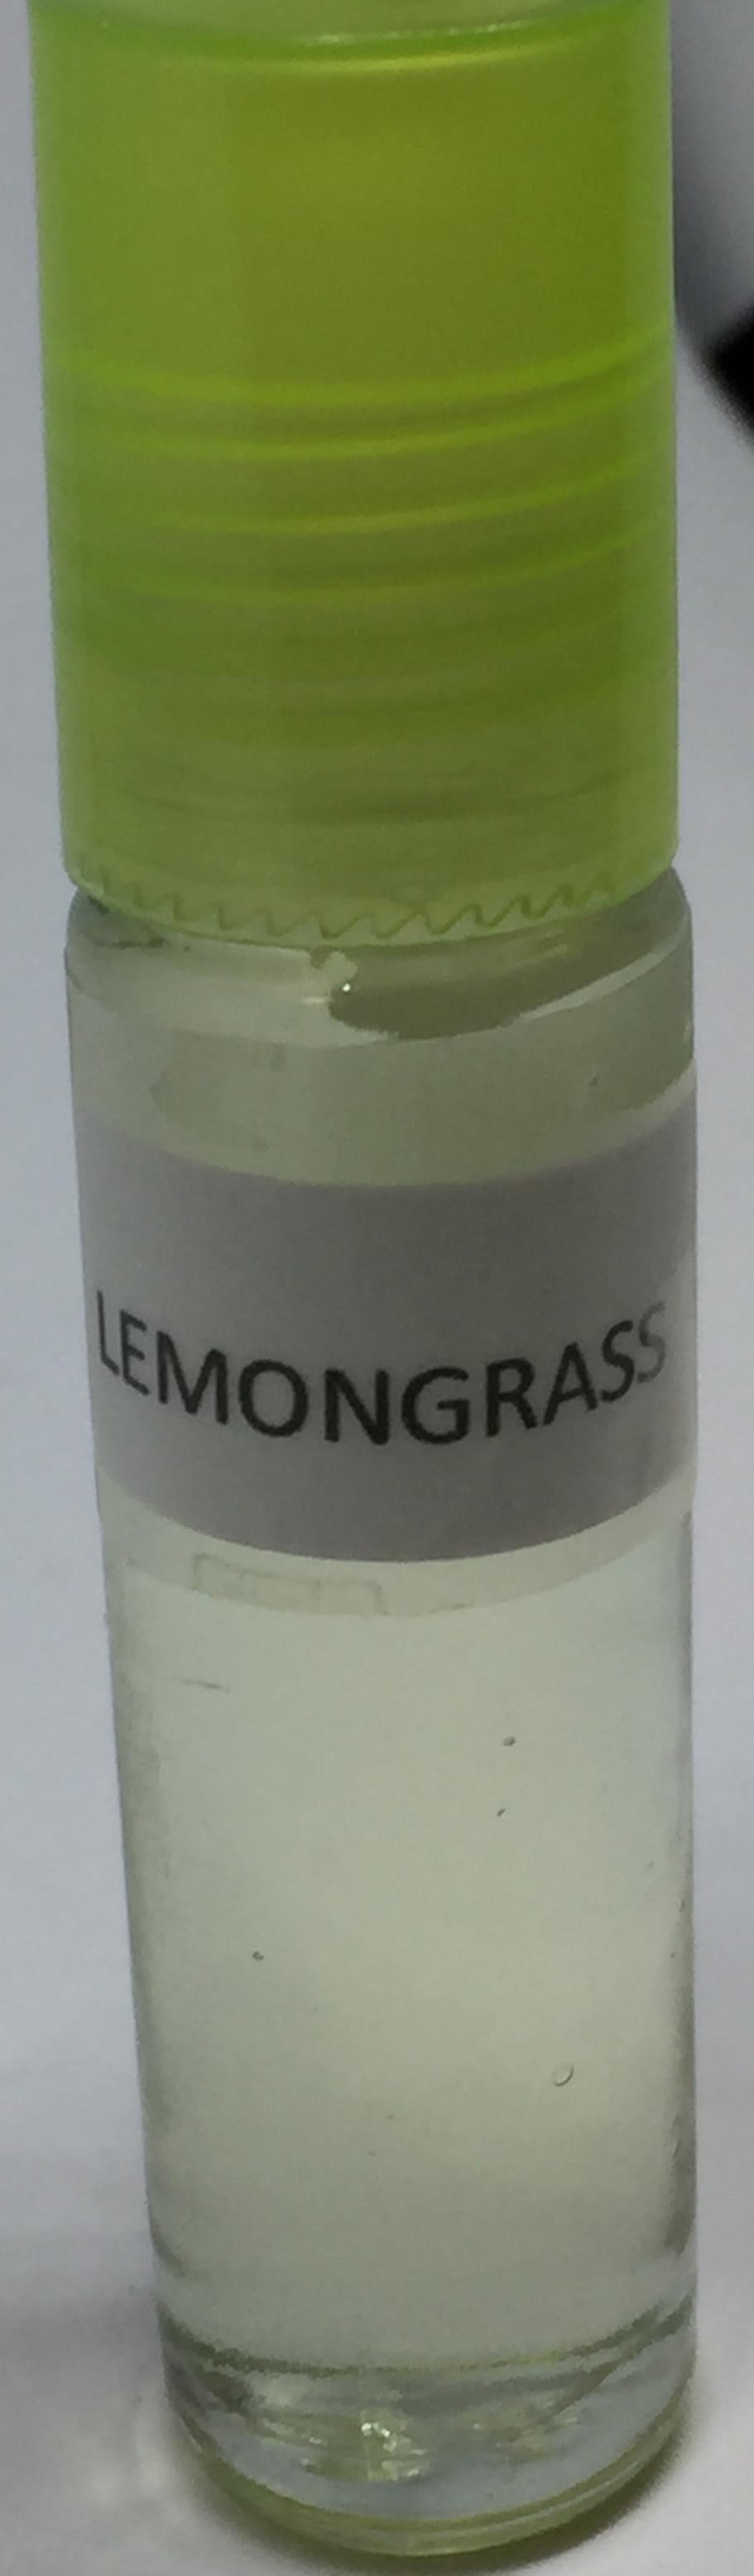 Lemongrass: Fragrance(Perfume)Body Oil Unisex